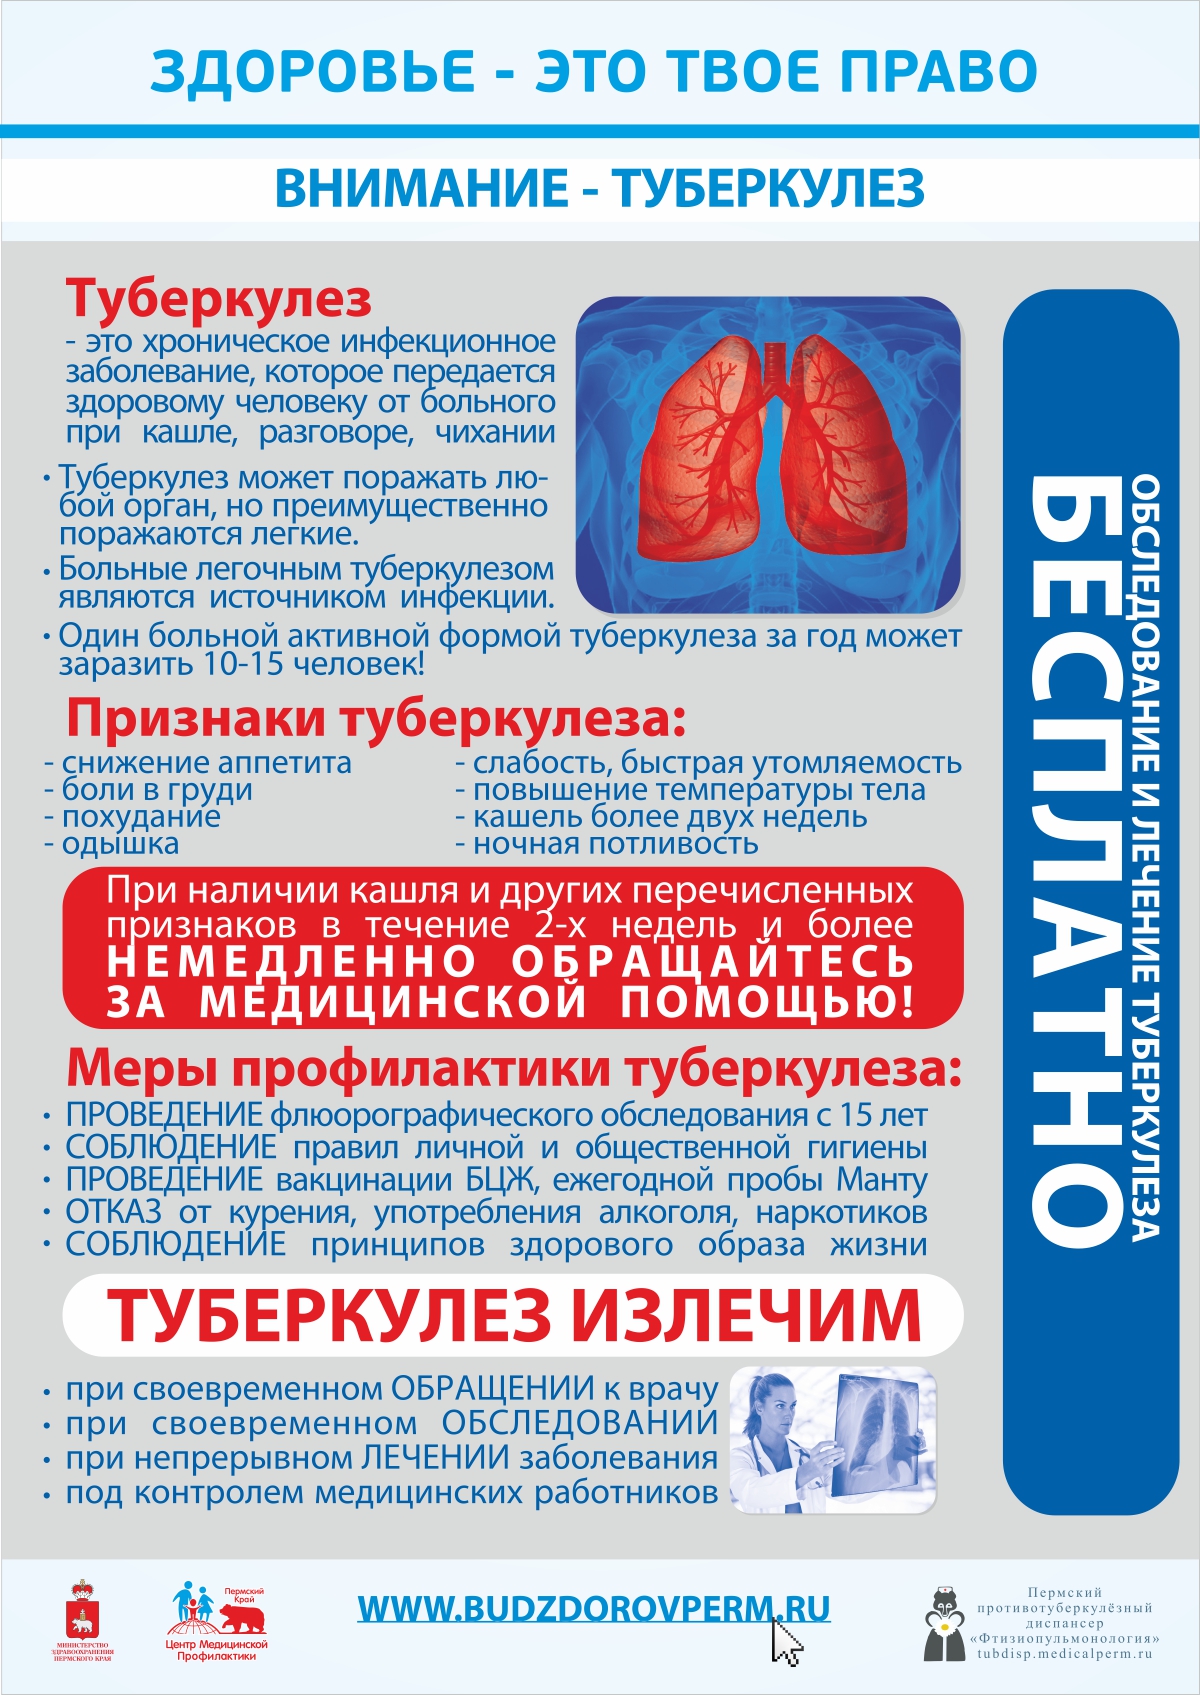 Туберкулёз: симптомы, причины, лечение